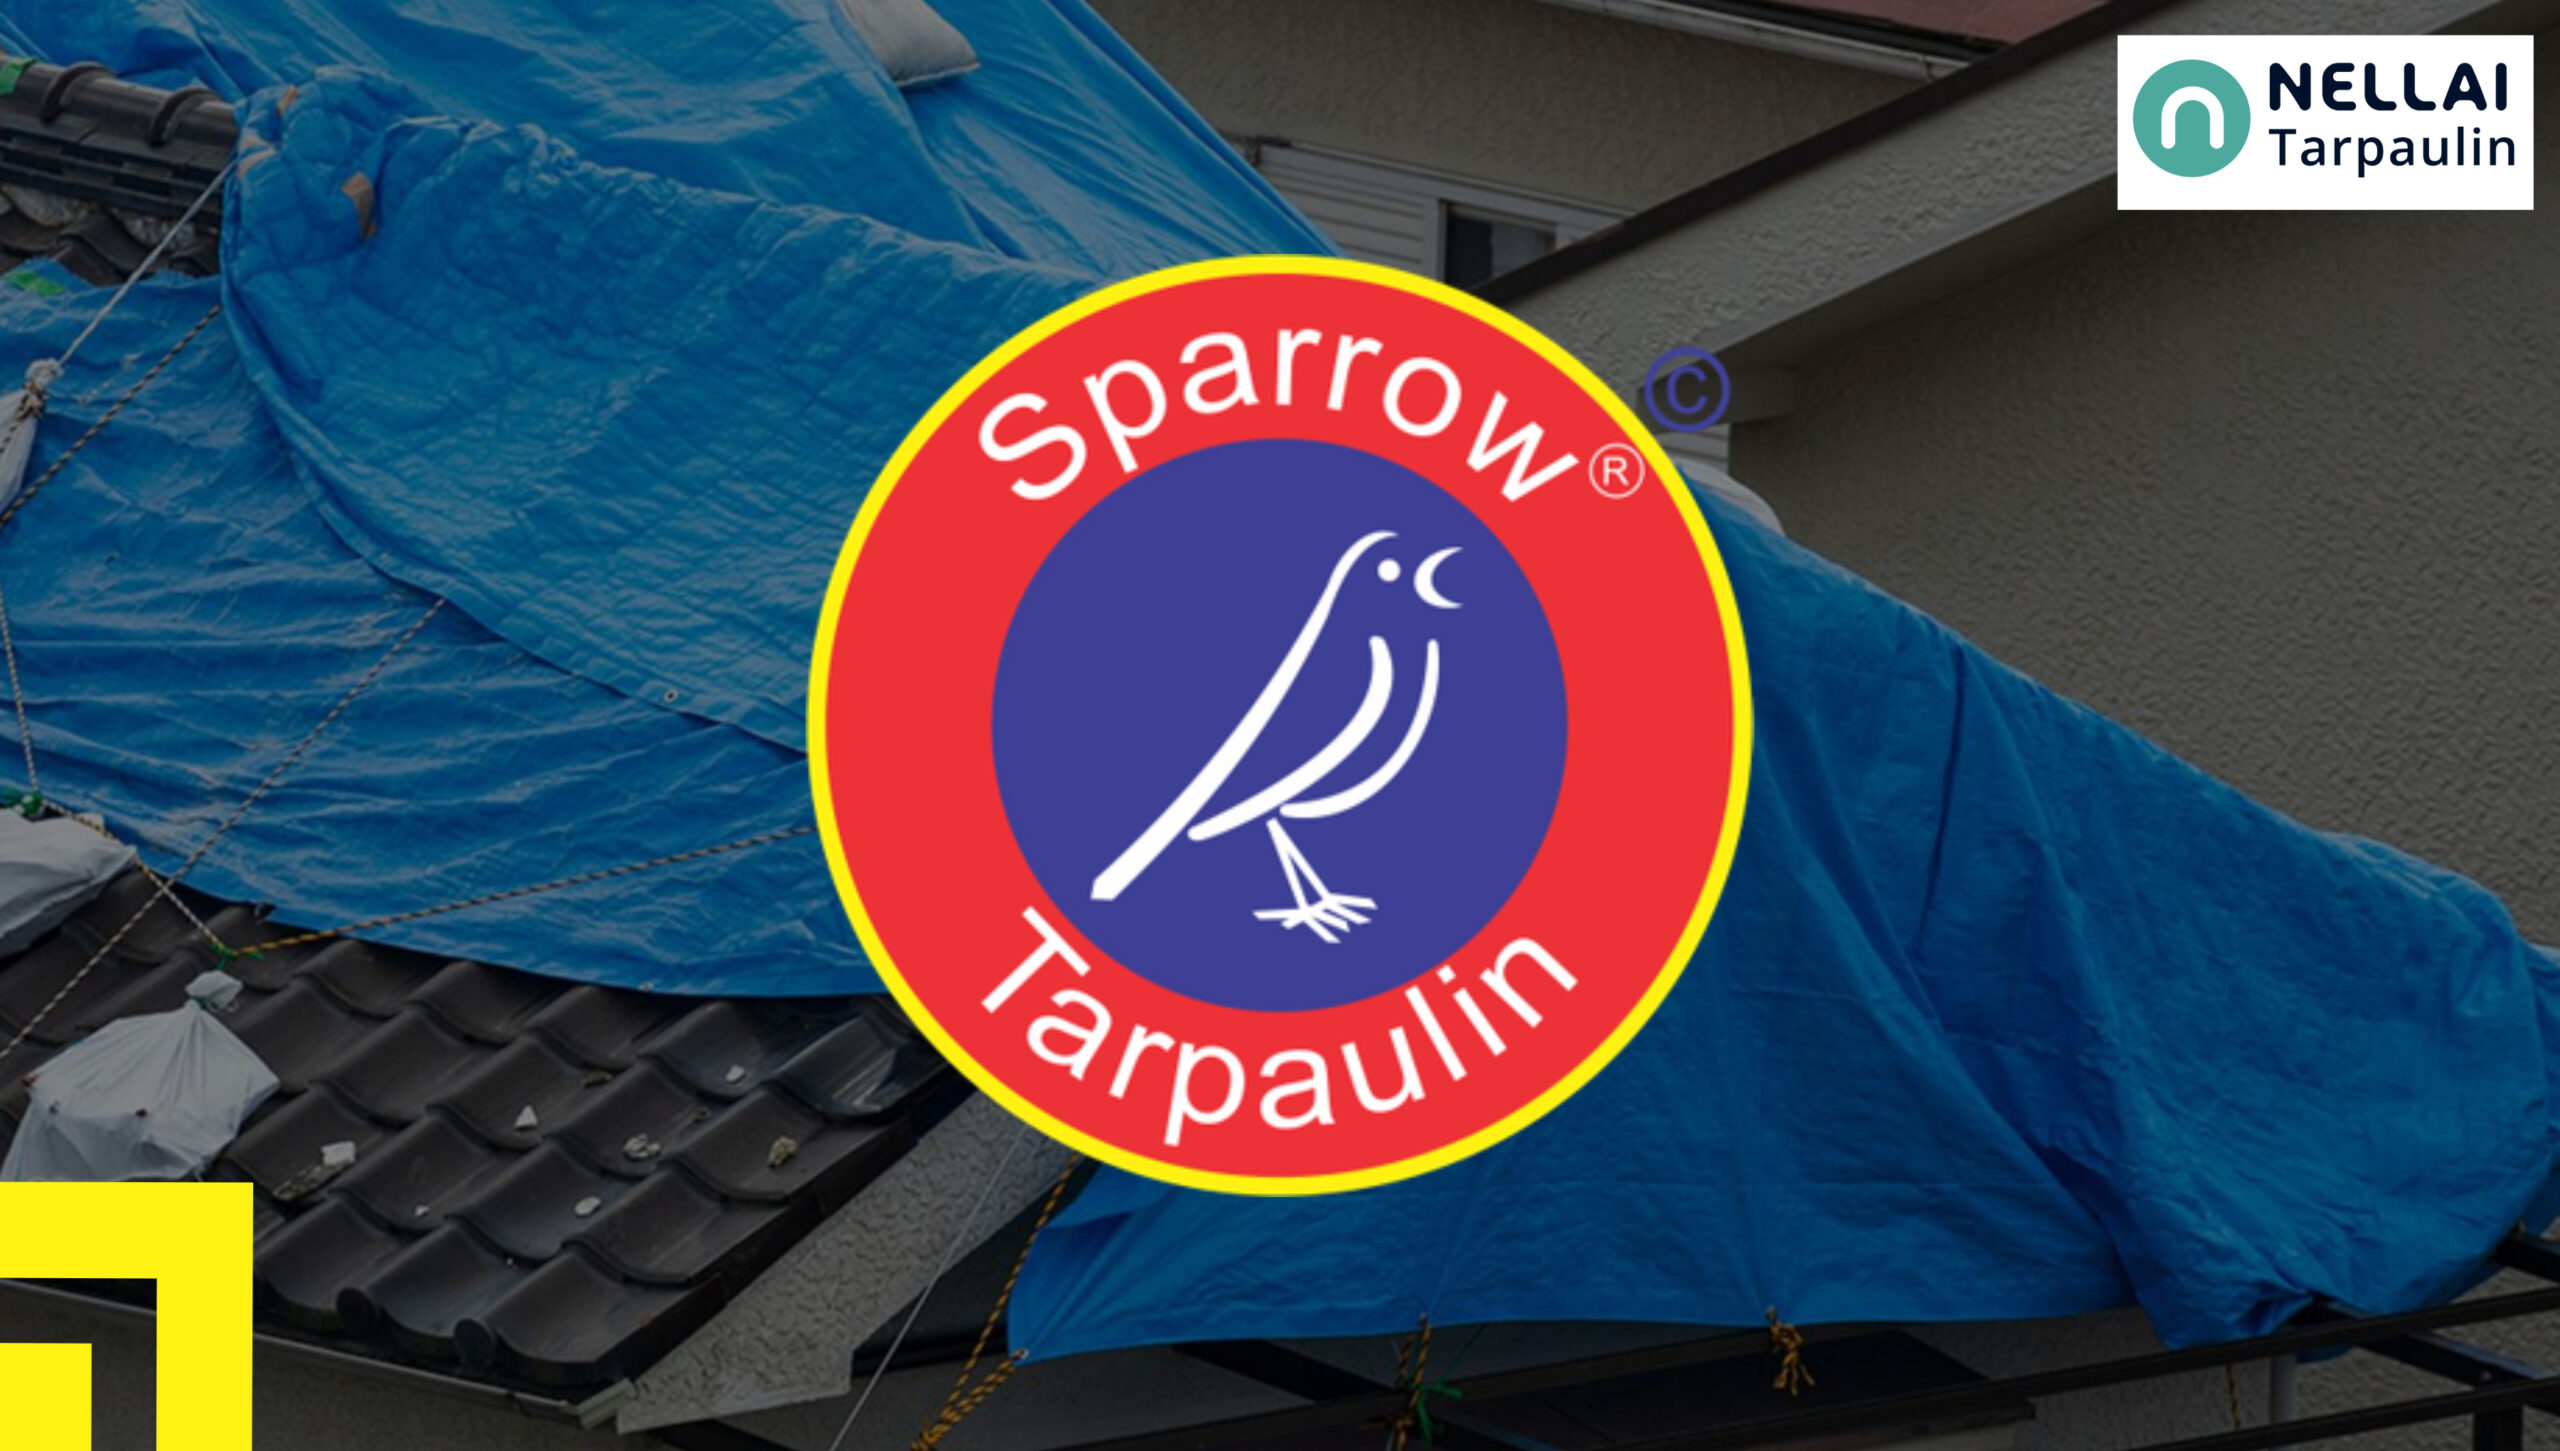 Sparrow Tarpaulin 100% Waterproof Tarpaulins